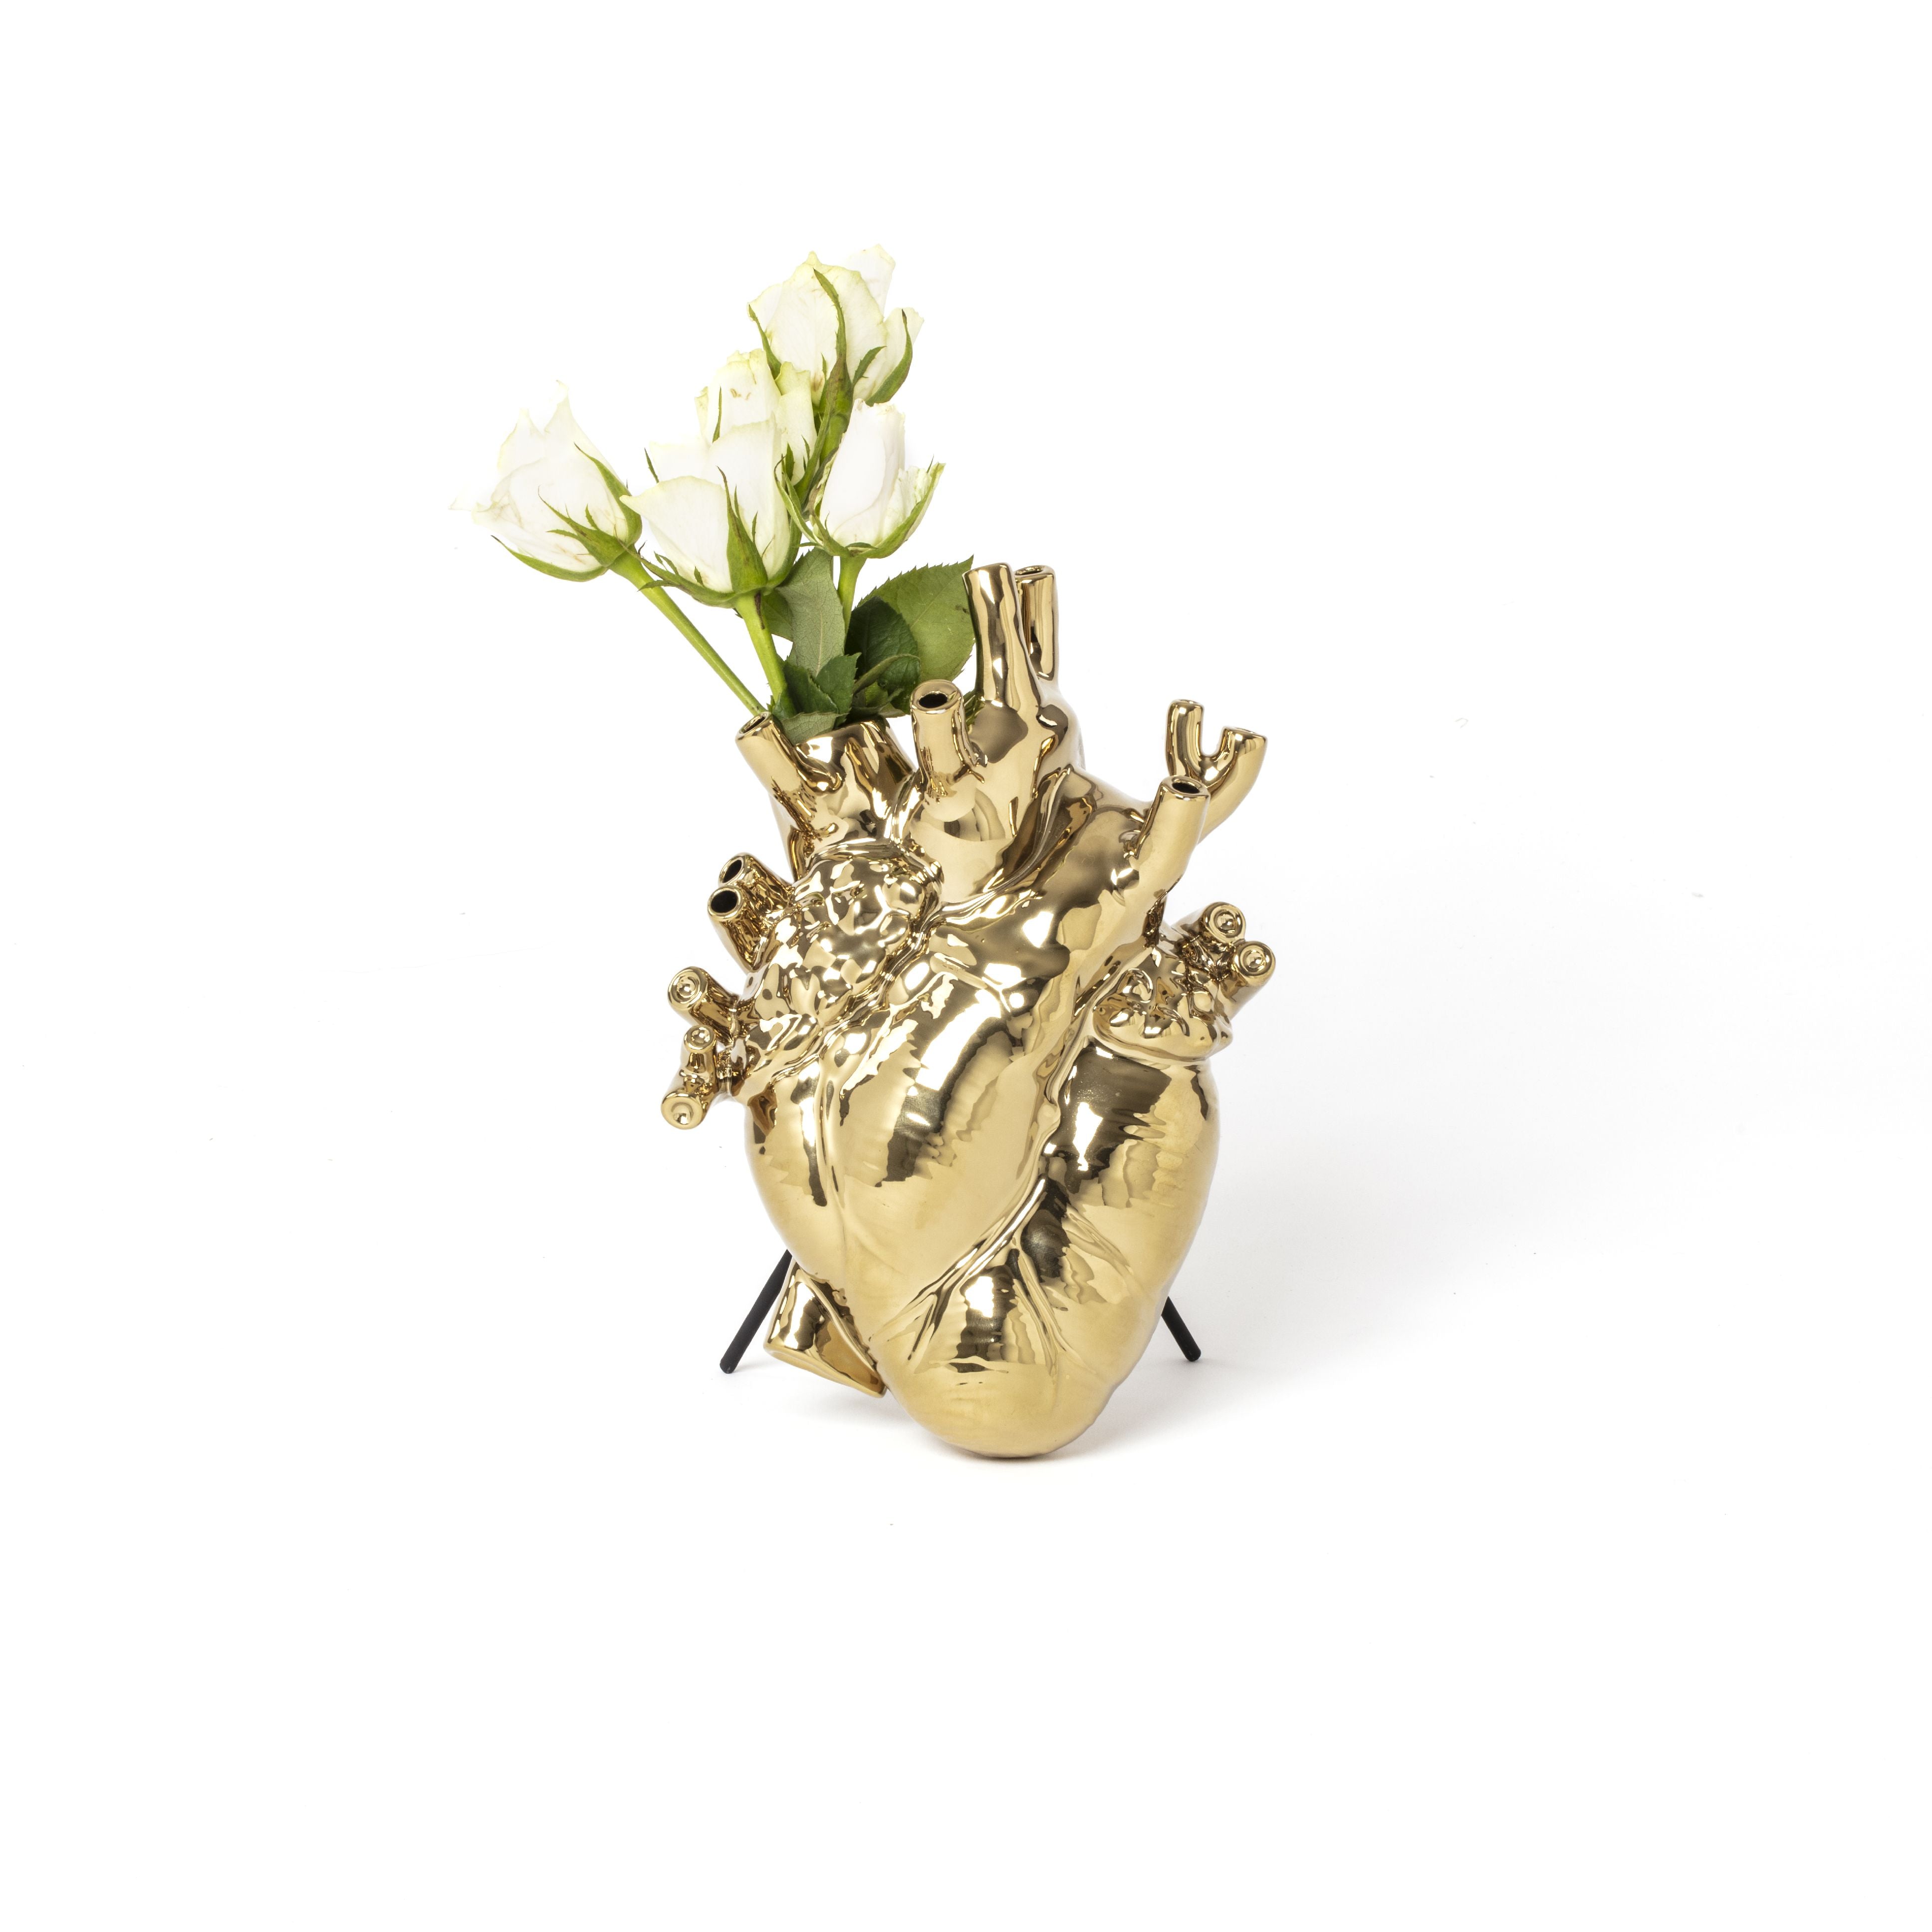 Seletti Love in Bloom Vase, Gold